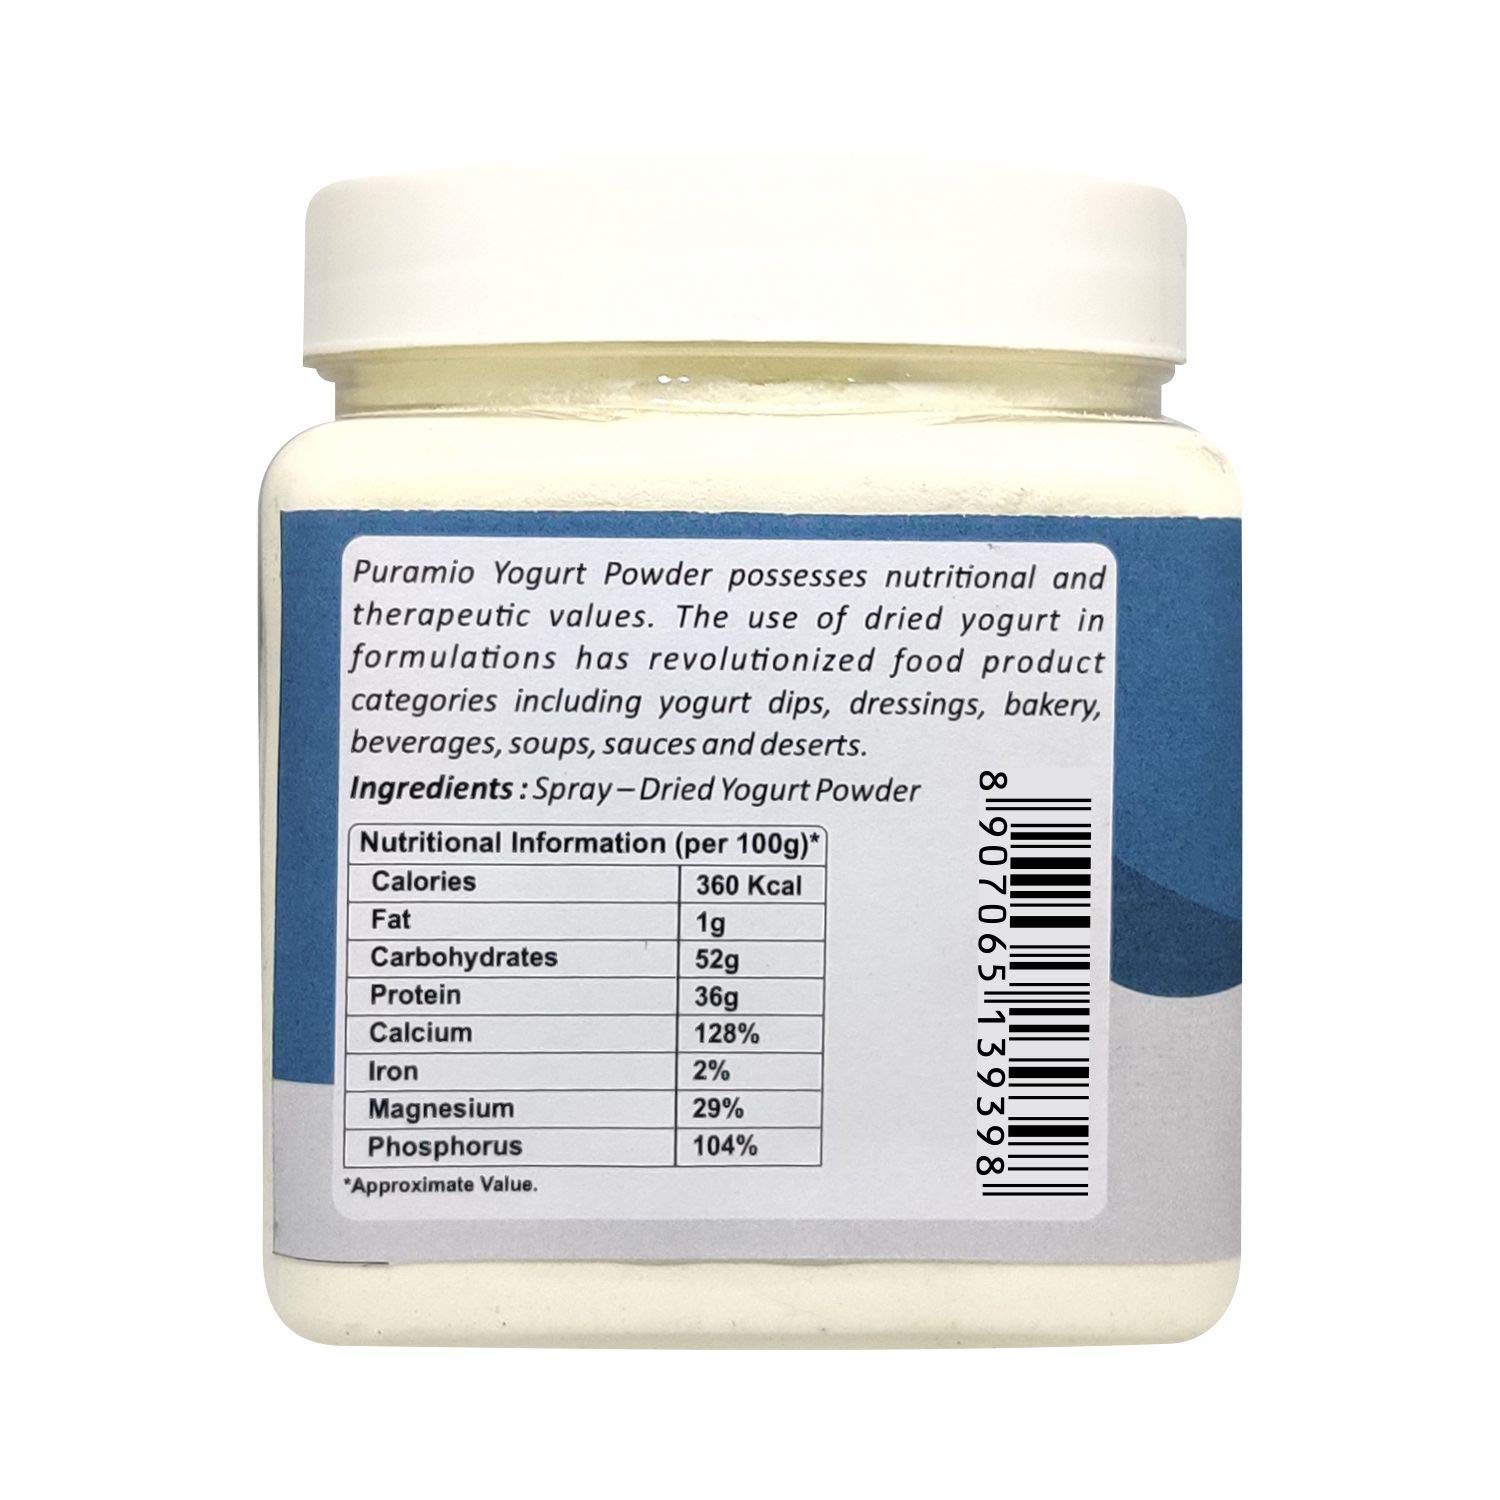 Puramio Yogurt Powder Image